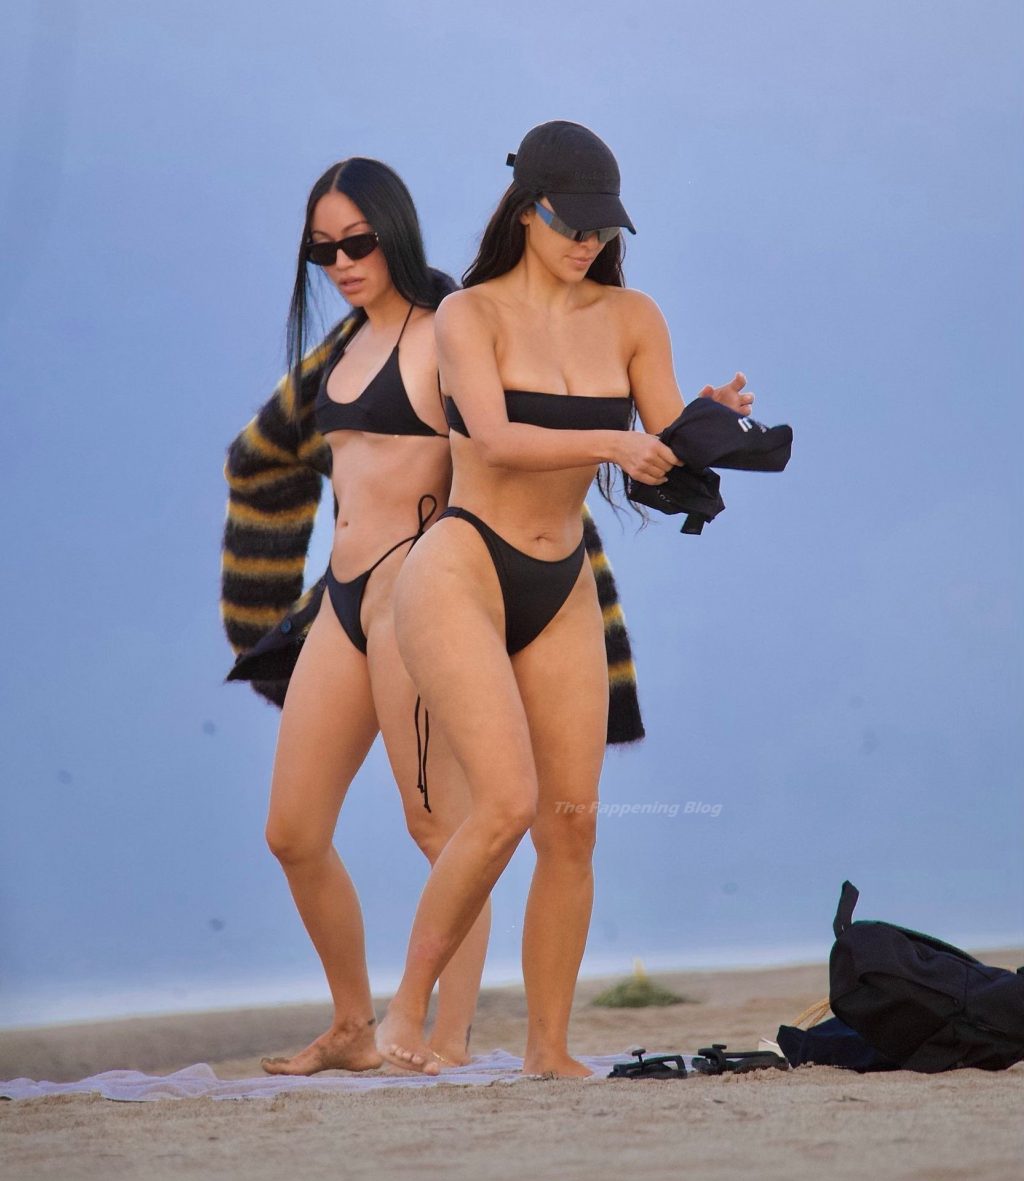 Kim Kardashian Flaunts Her Curves on The Beach (17 Photos)